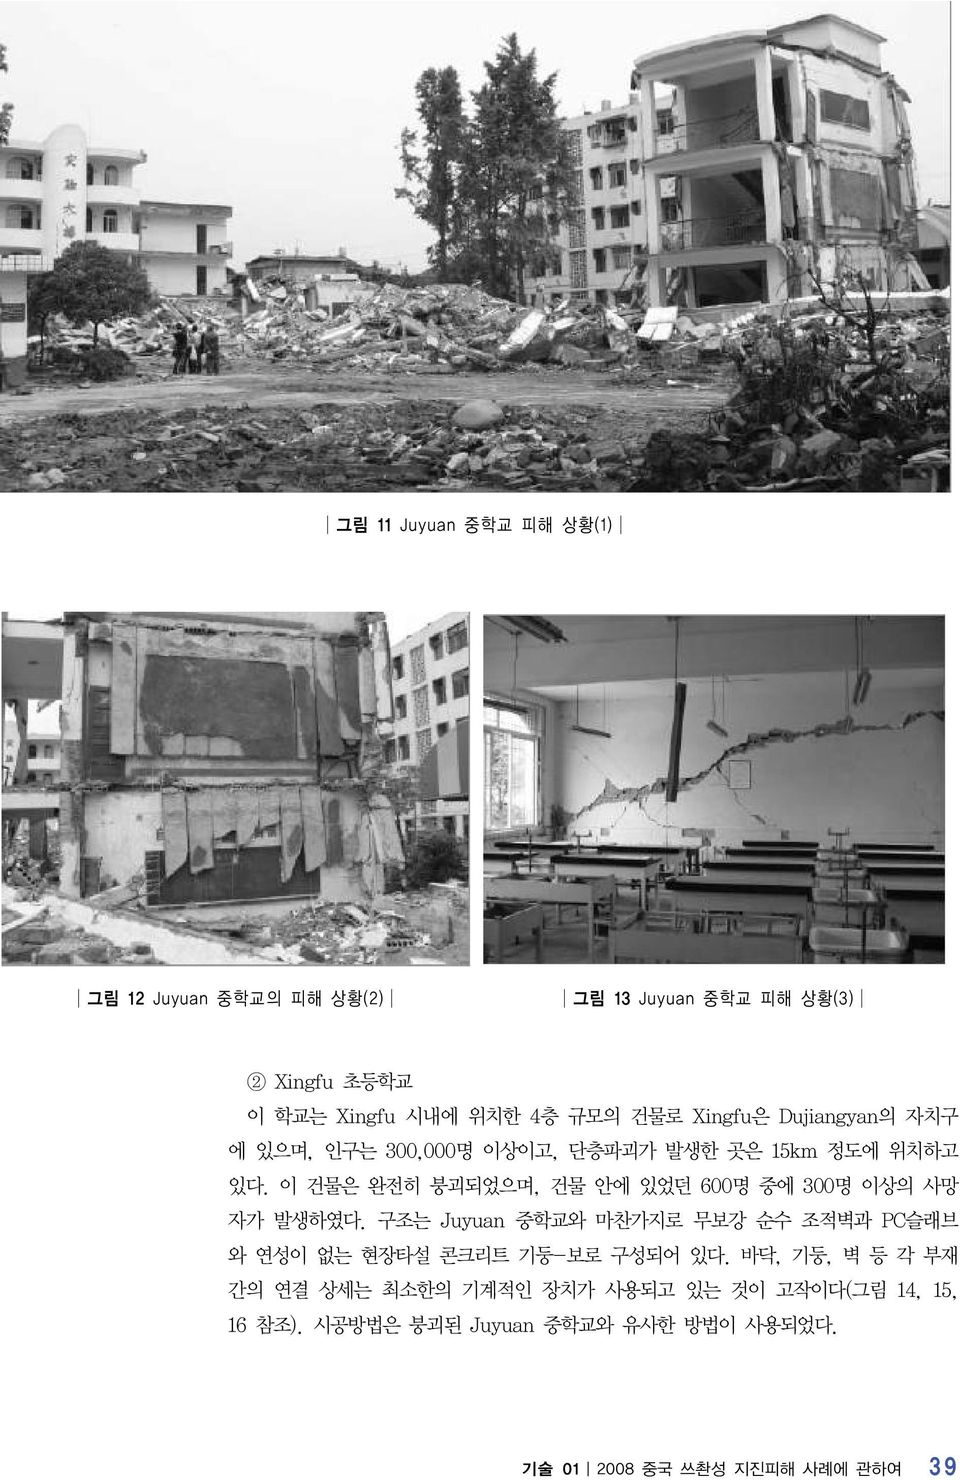 이 건물은 완전히 붕괴되었으며, 건물 안에 있었던 600명 중에 300명 이상의 사망 자가 발생하였다.